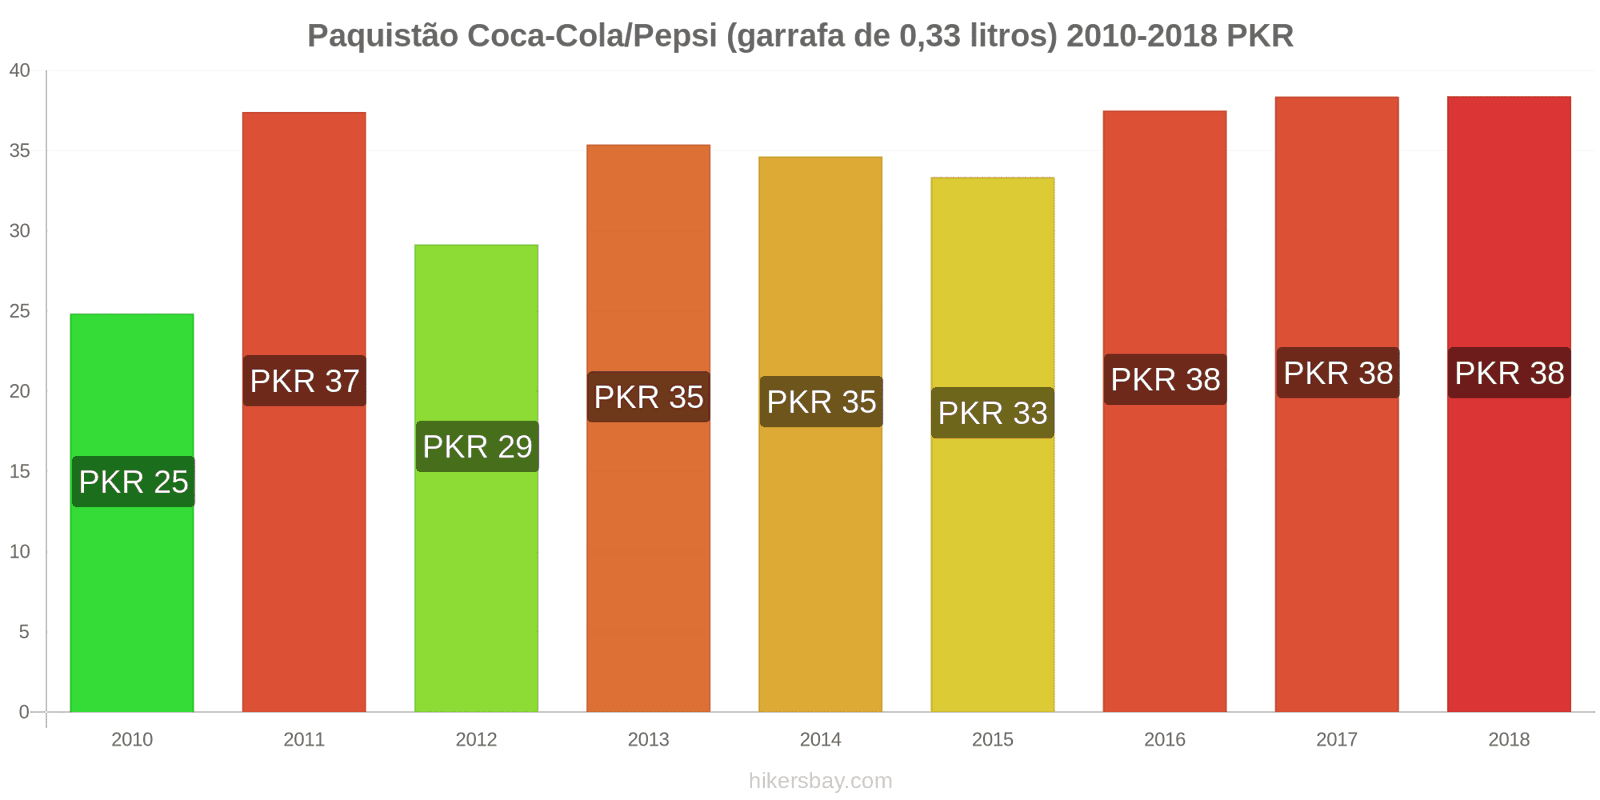 Paquistão mudanças de preços Coca-Cola/Pepsi (garrafa de 0.33 litros) hikersbay.com